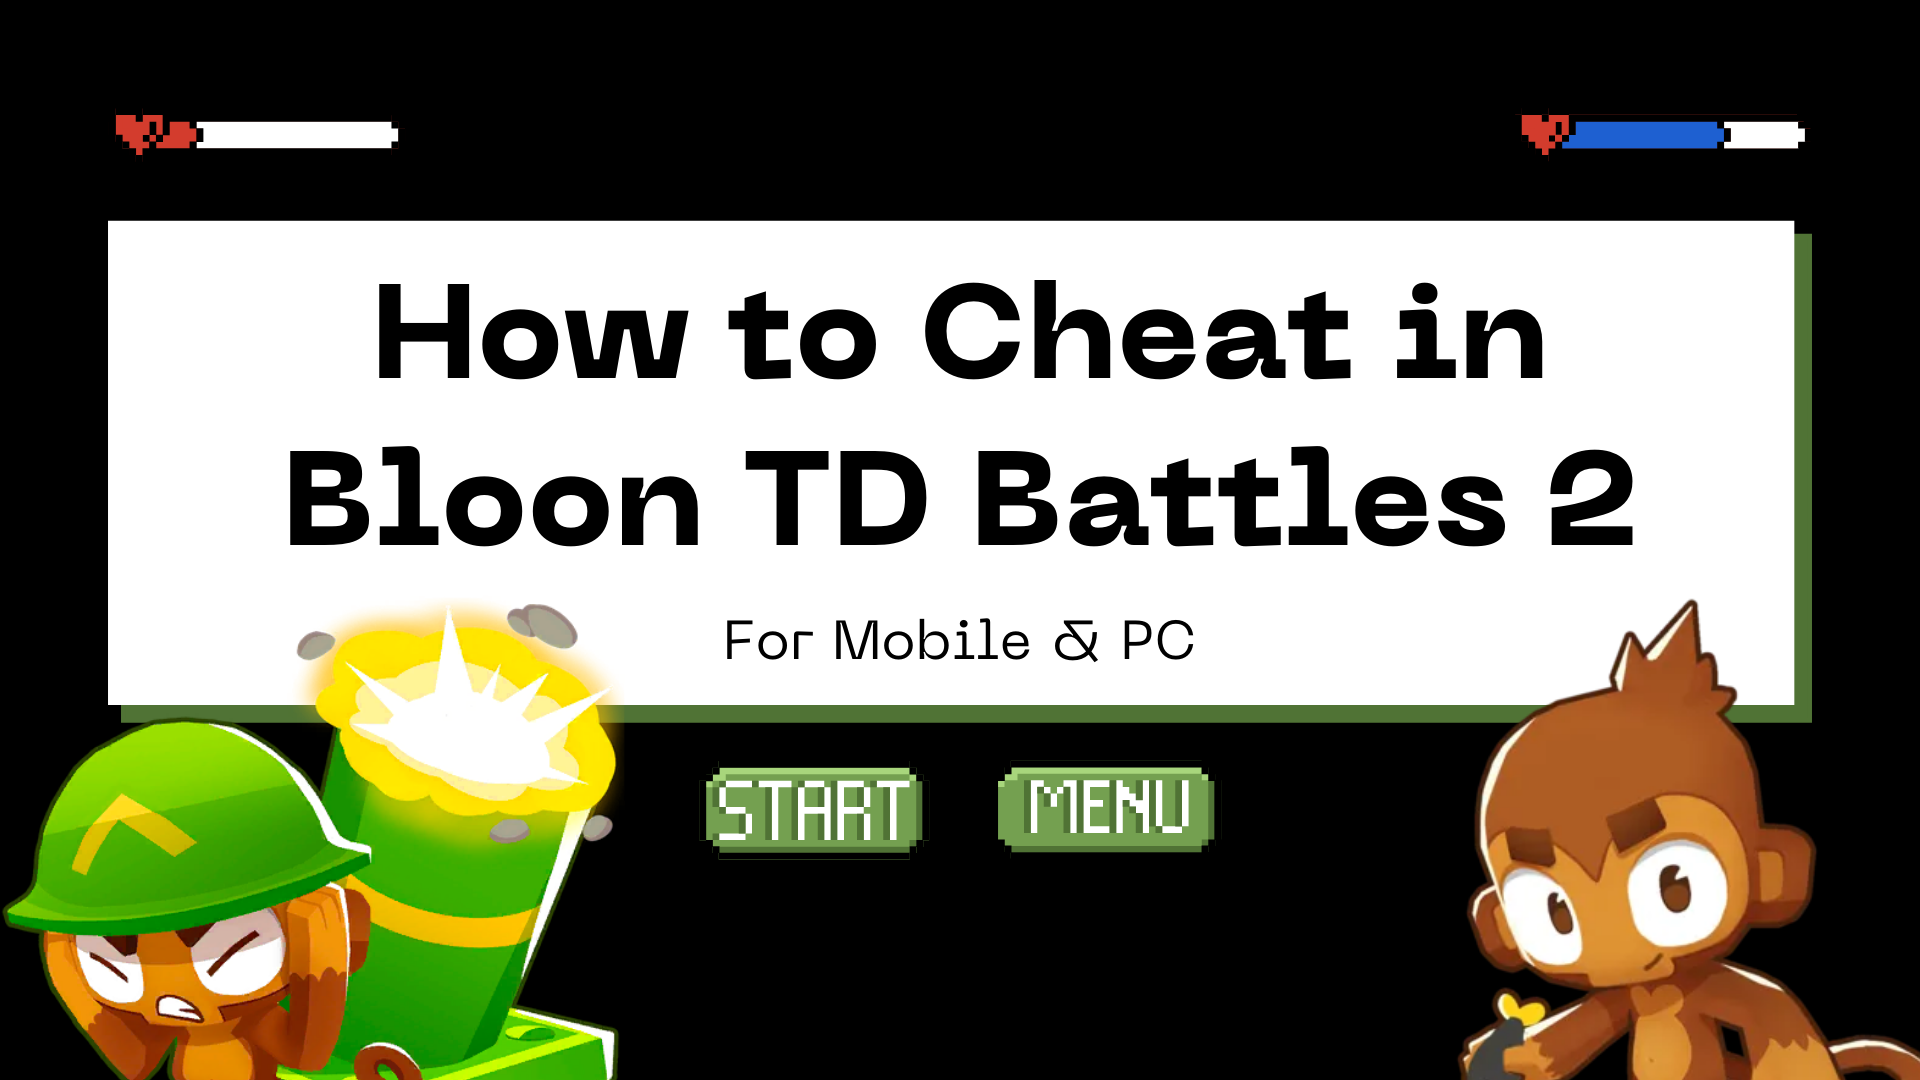 bloons td battles hack mobile